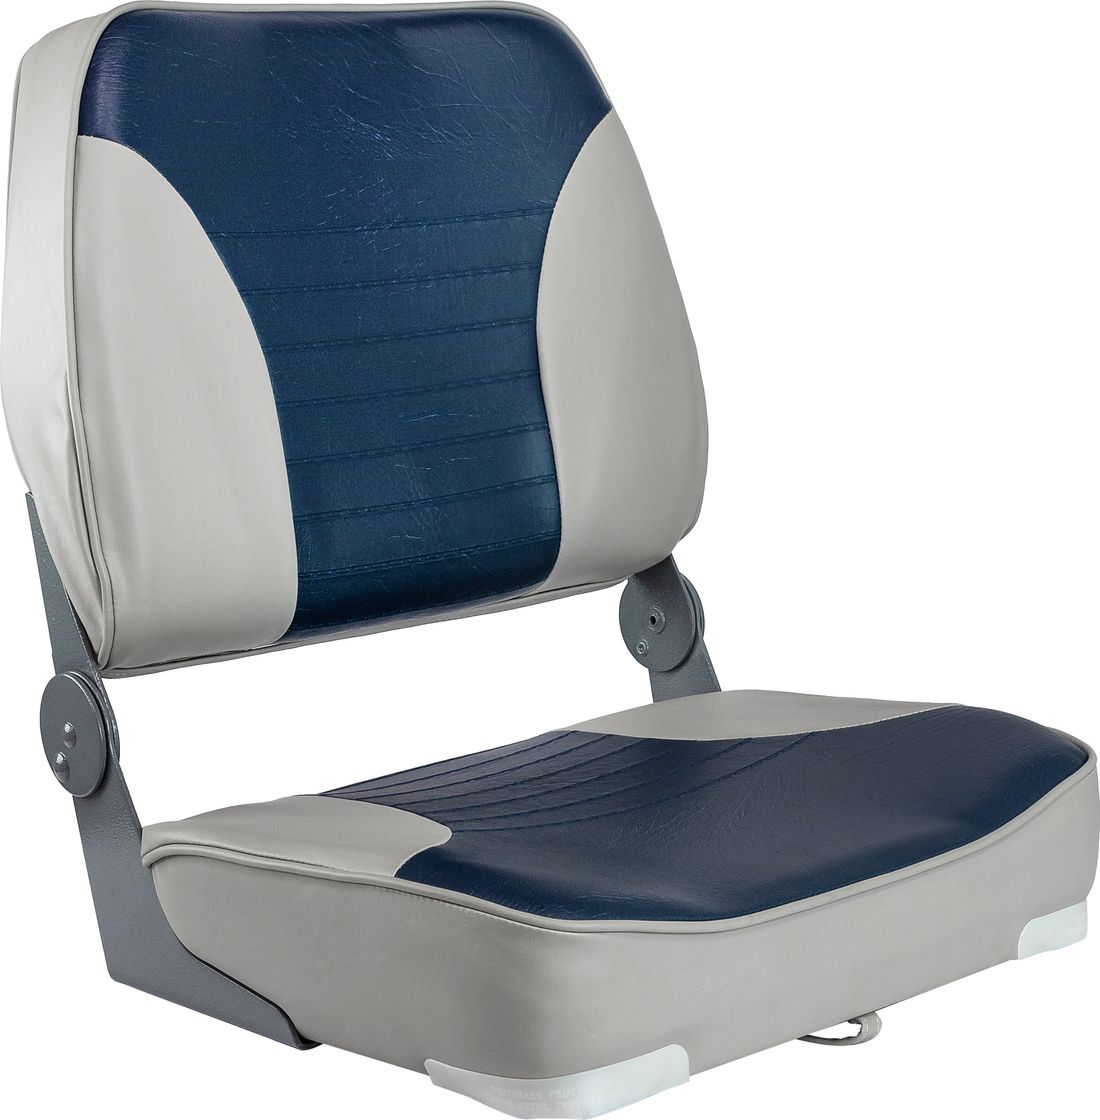 Кресло XXL складное мягкое двухцветное серый/синий 1040691 кресло складное мягкое skipper серый синий 1061019